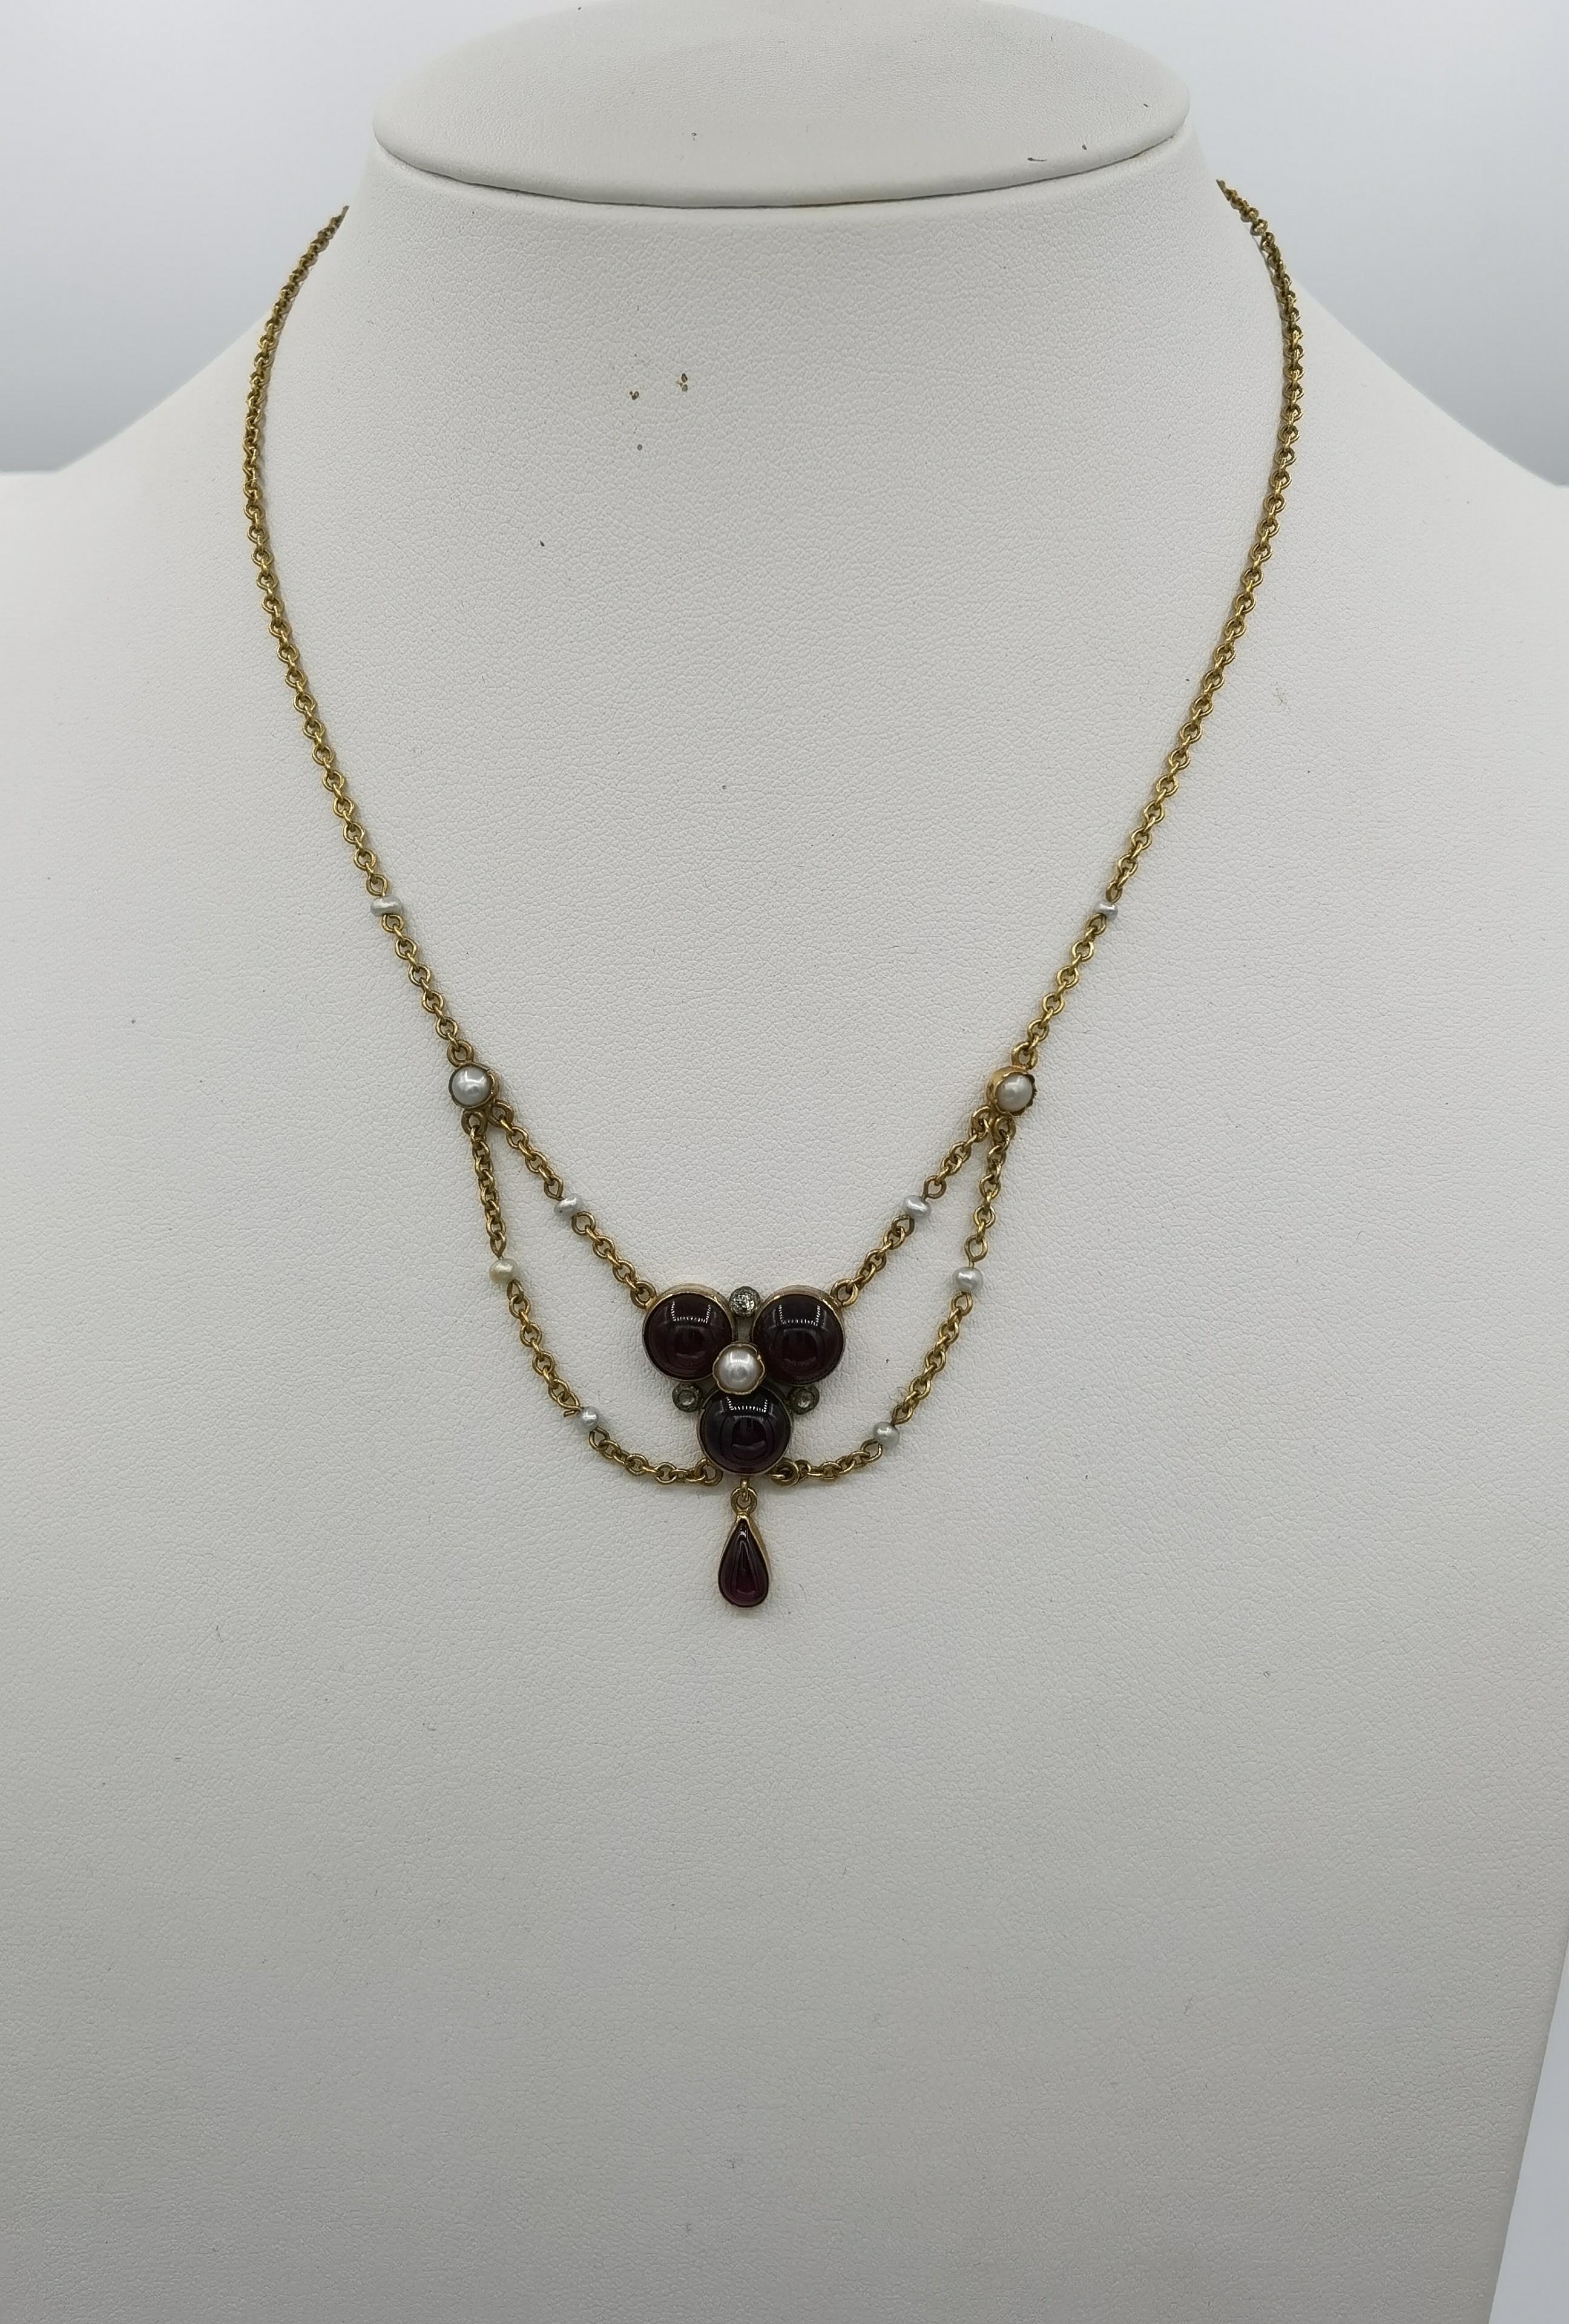 Or jaune 9 k
grenat cabouchoncut
perles
3 diamants
long 41 cm dans une fronde d'environ 3 cm
poids 7 grammes
Angleterre vers 1900